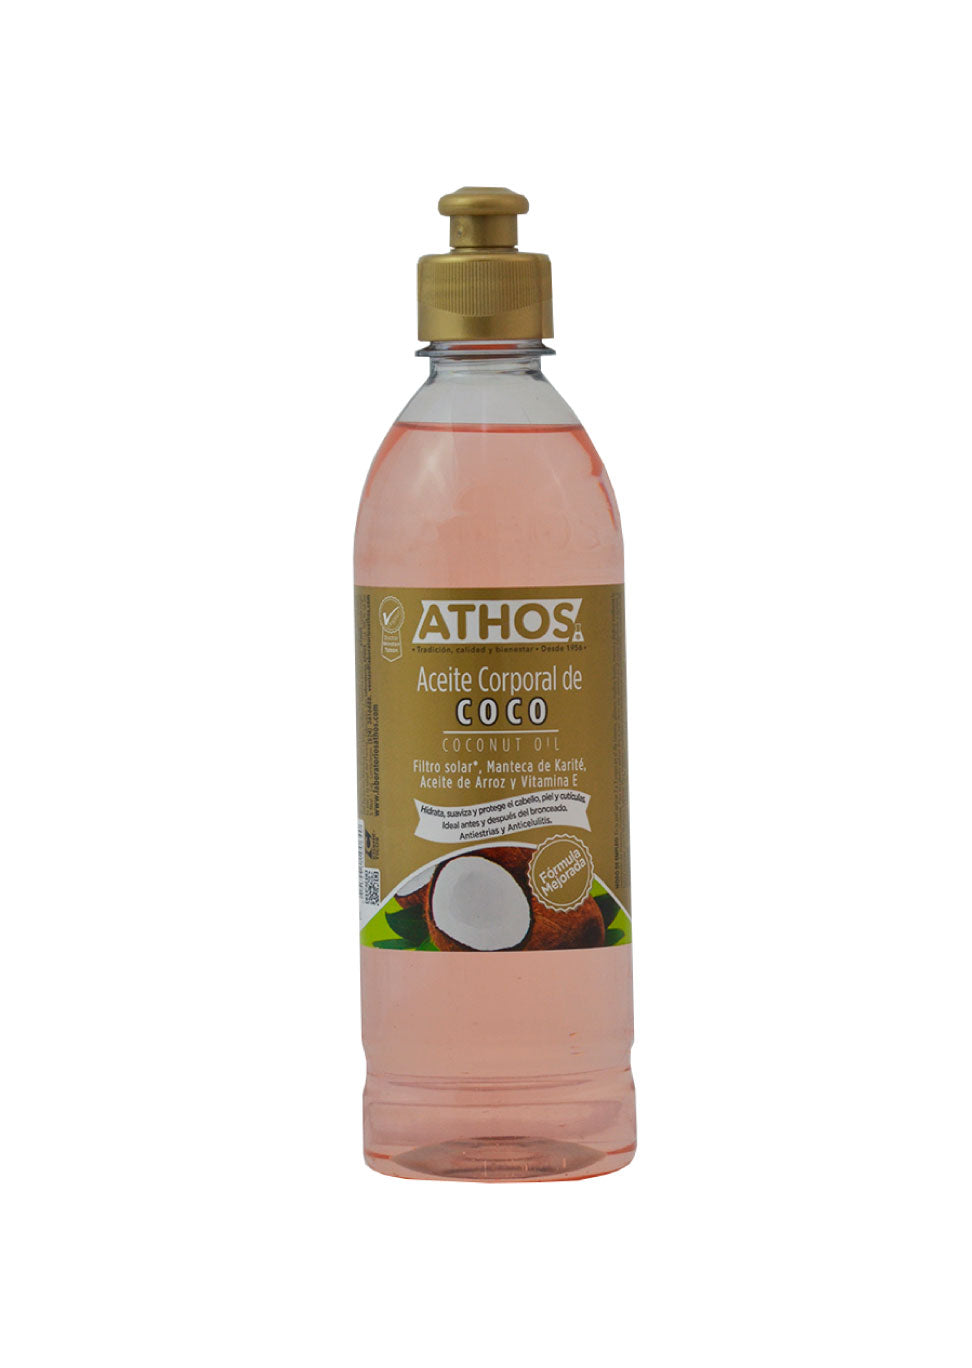 Aceite de Coco y para qué sirve | Athos